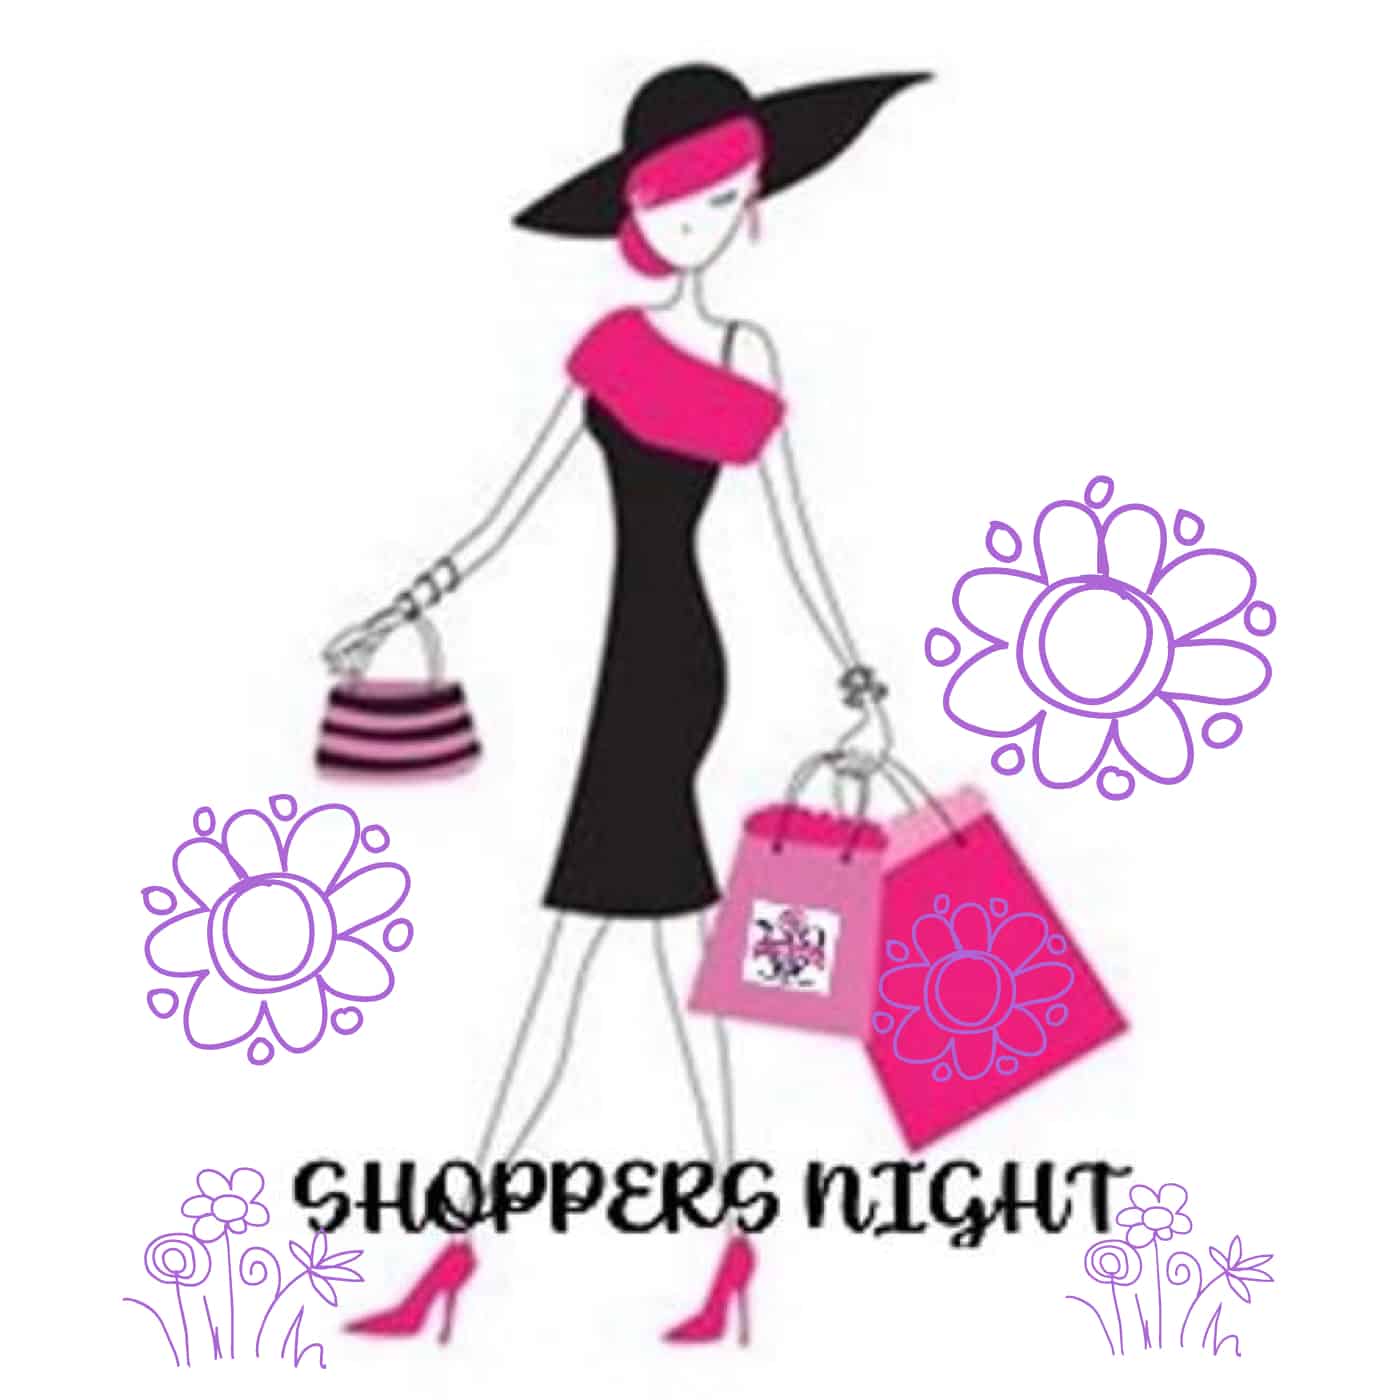 Women's Club of hackberry Creek Shoppers Night logo